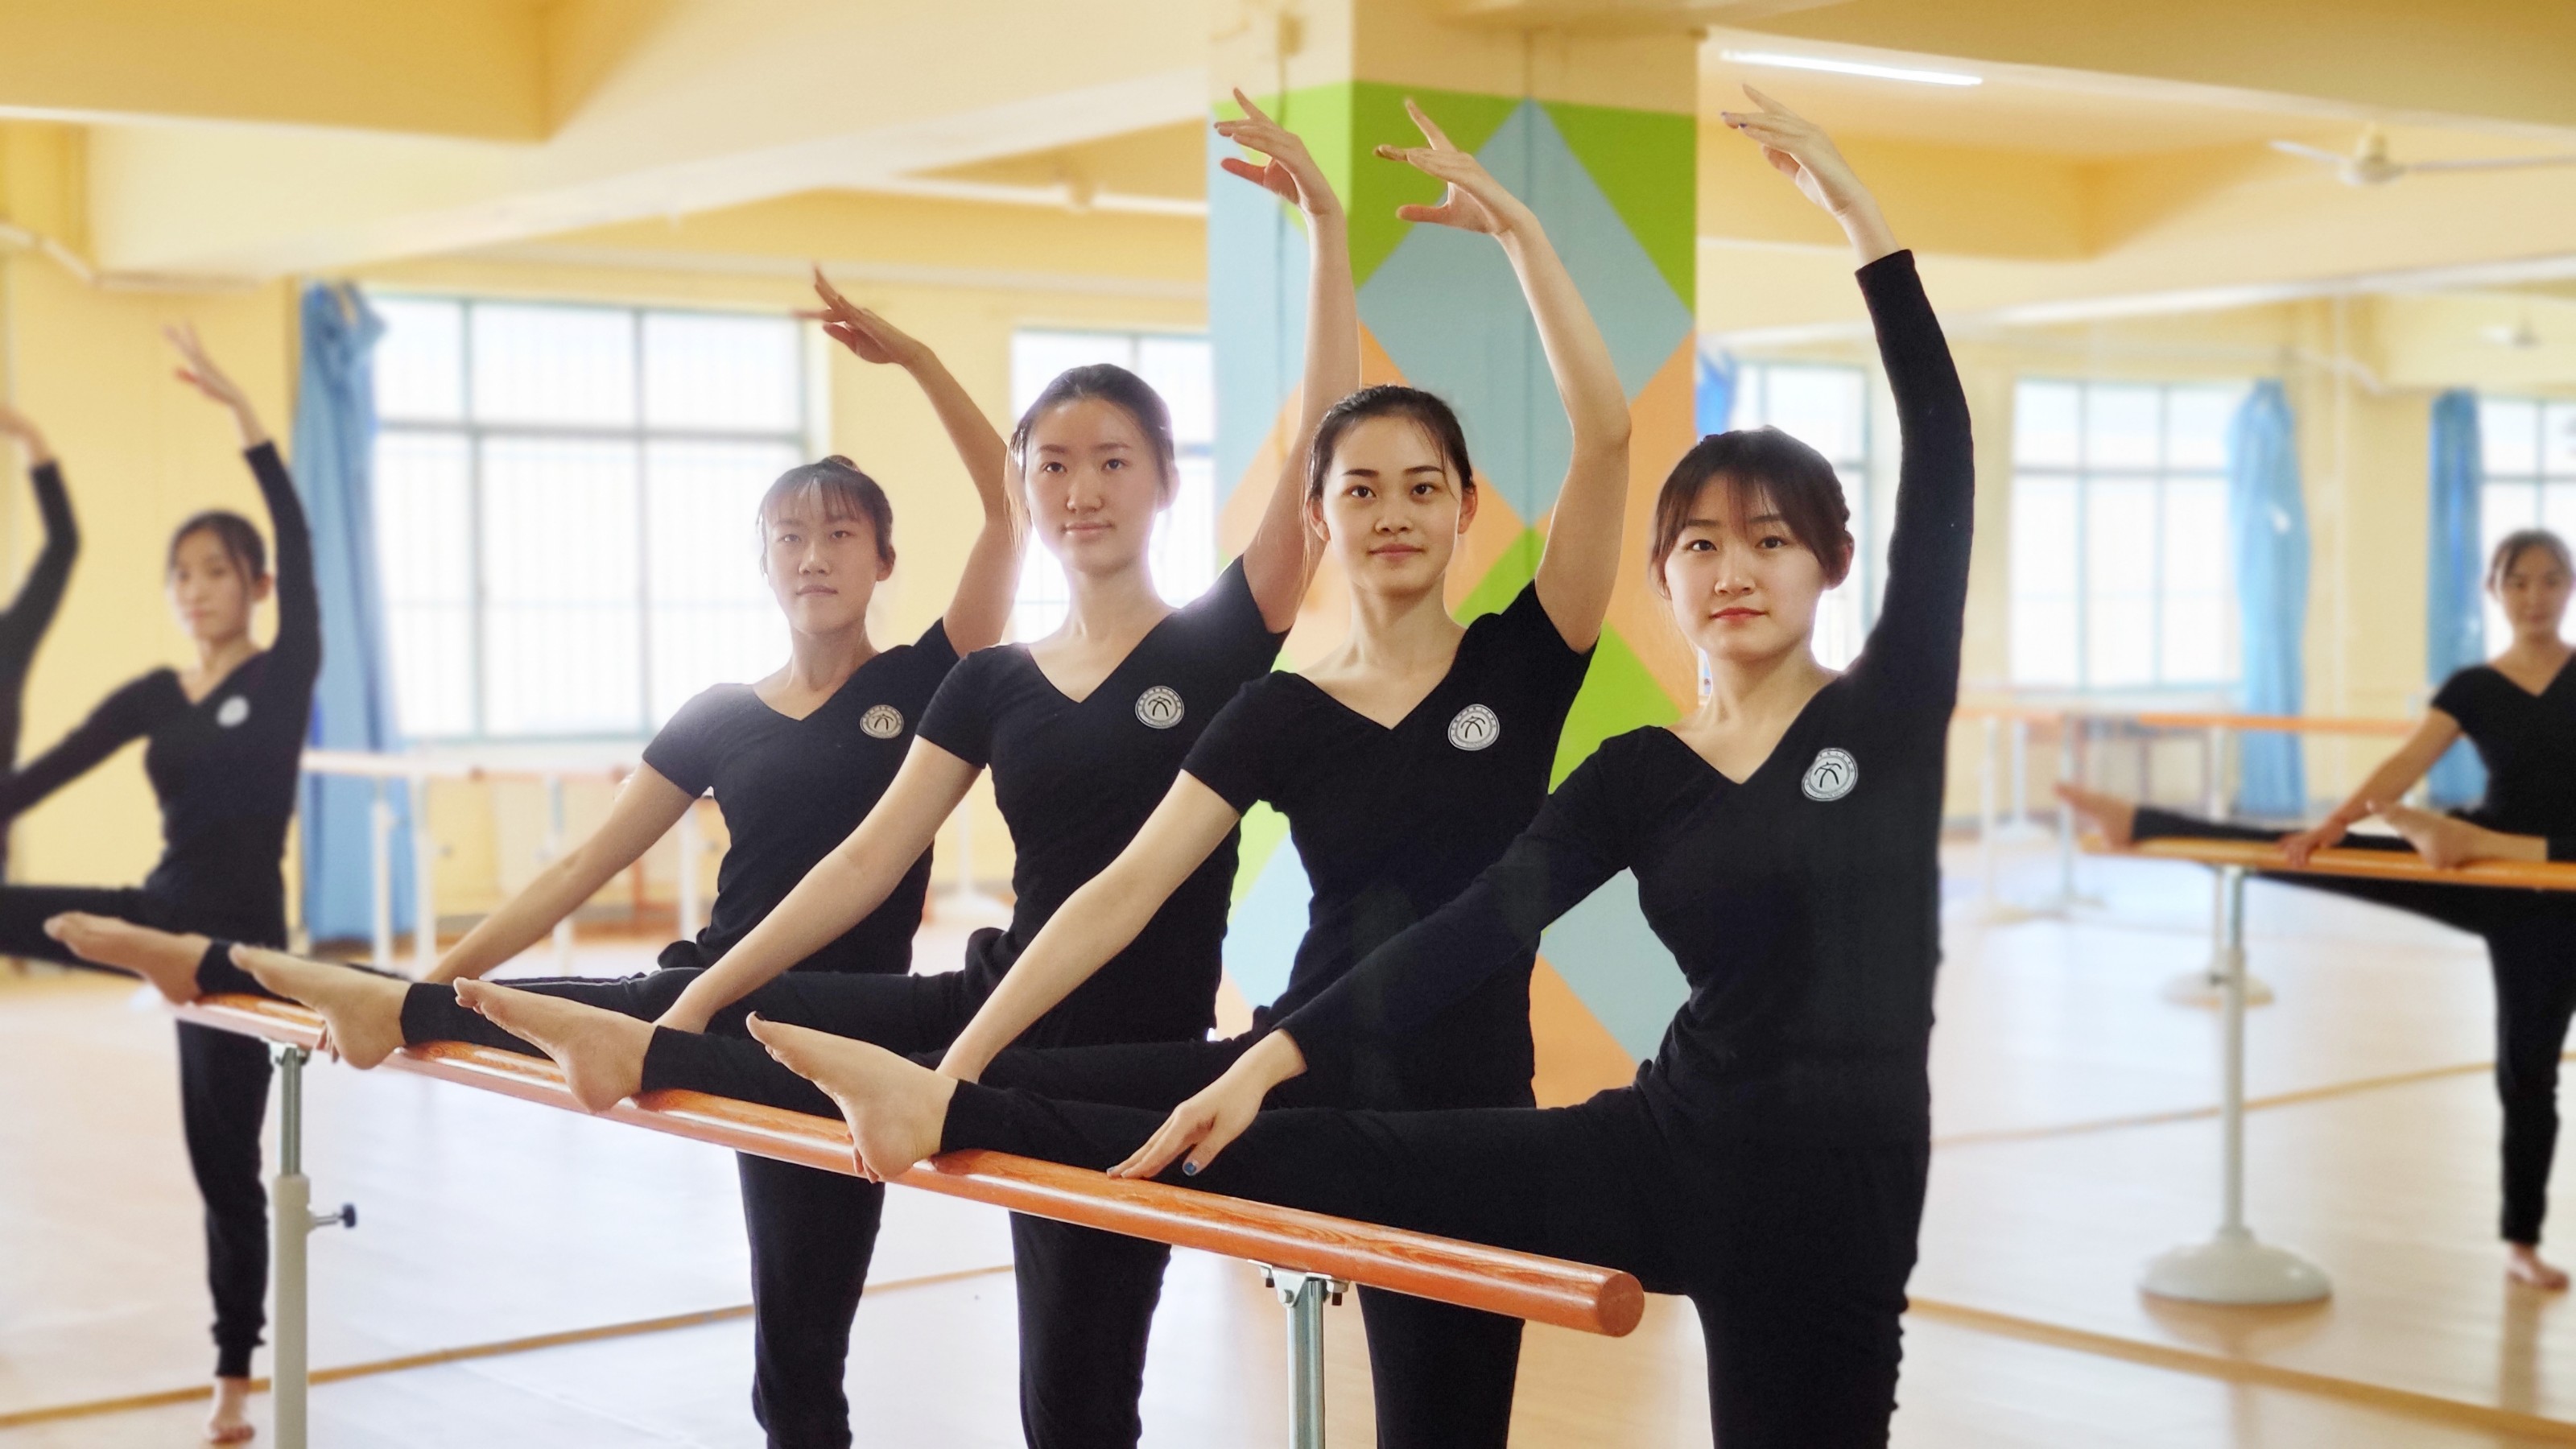 北语街舞队参加“Keep Keep高校街舞大赛”取得出色成绩-北京语言大学新闻网